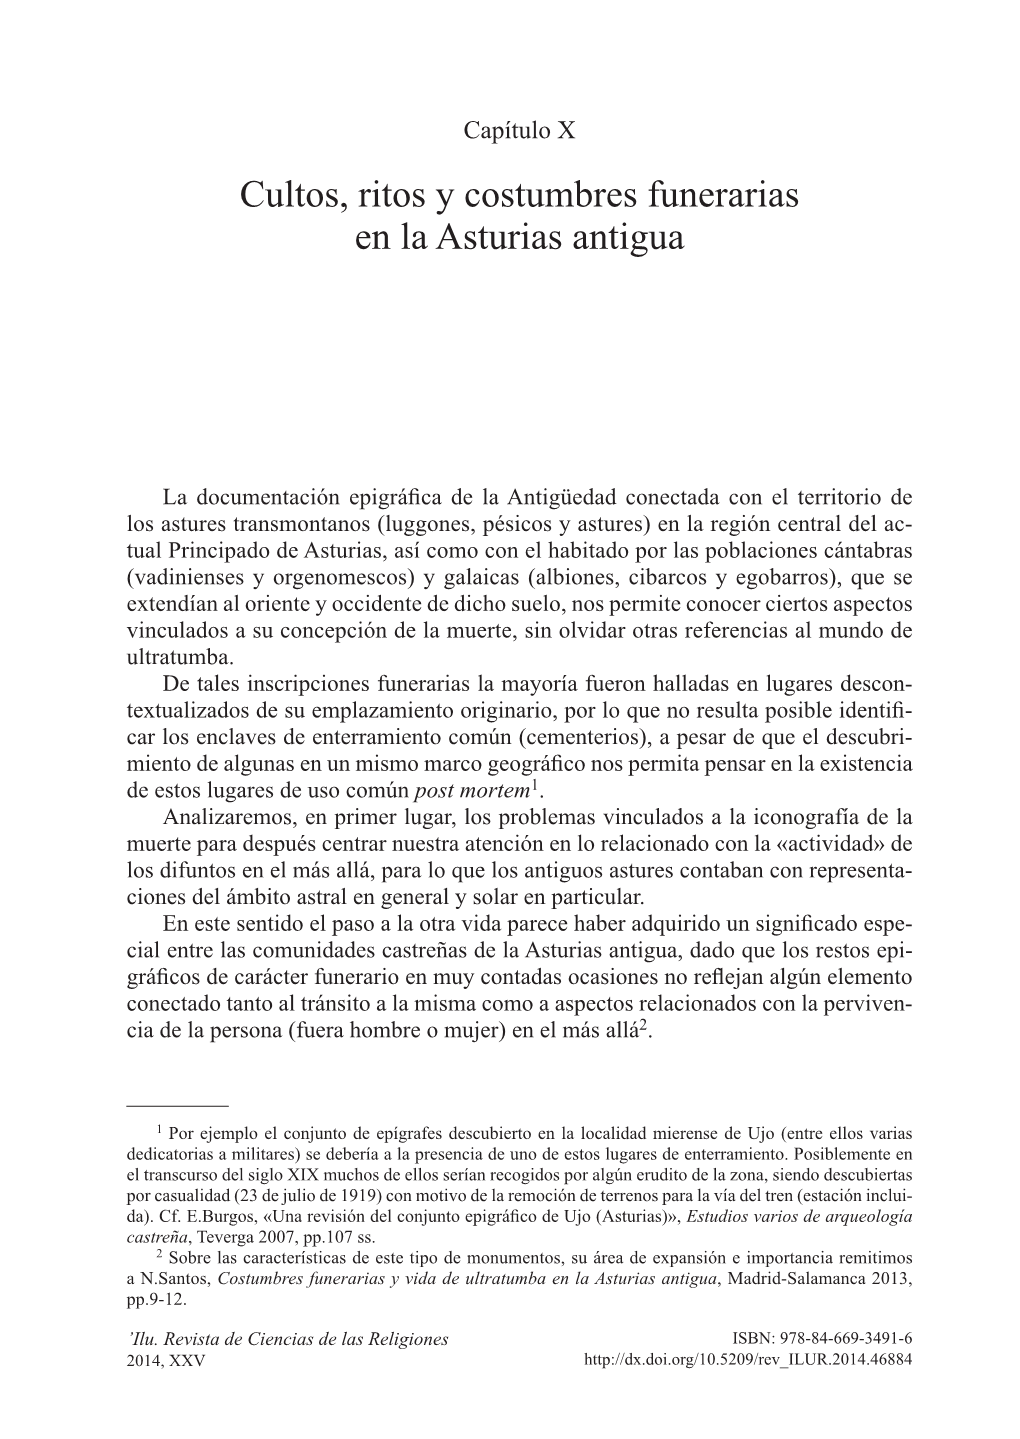 Cultos, Ritos Y Costumbres Funerarias En La Asturias Antigua